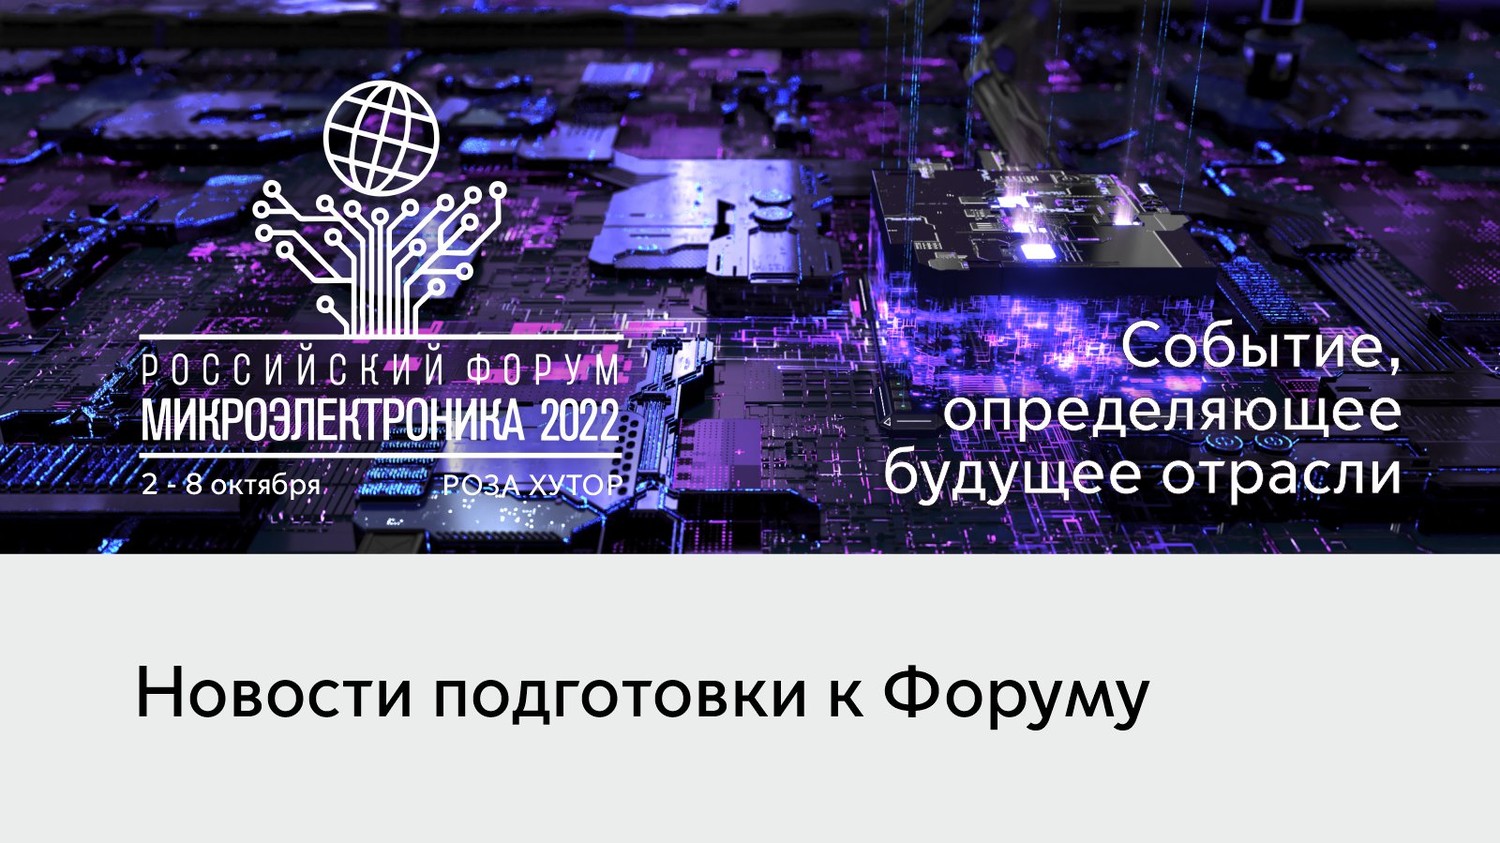 4 октября на Российском форуме «Микроэлектроника 2022» пройдёт пленарное заседание на тему «Искусственный и гибридный интеллект: ЭКБ...